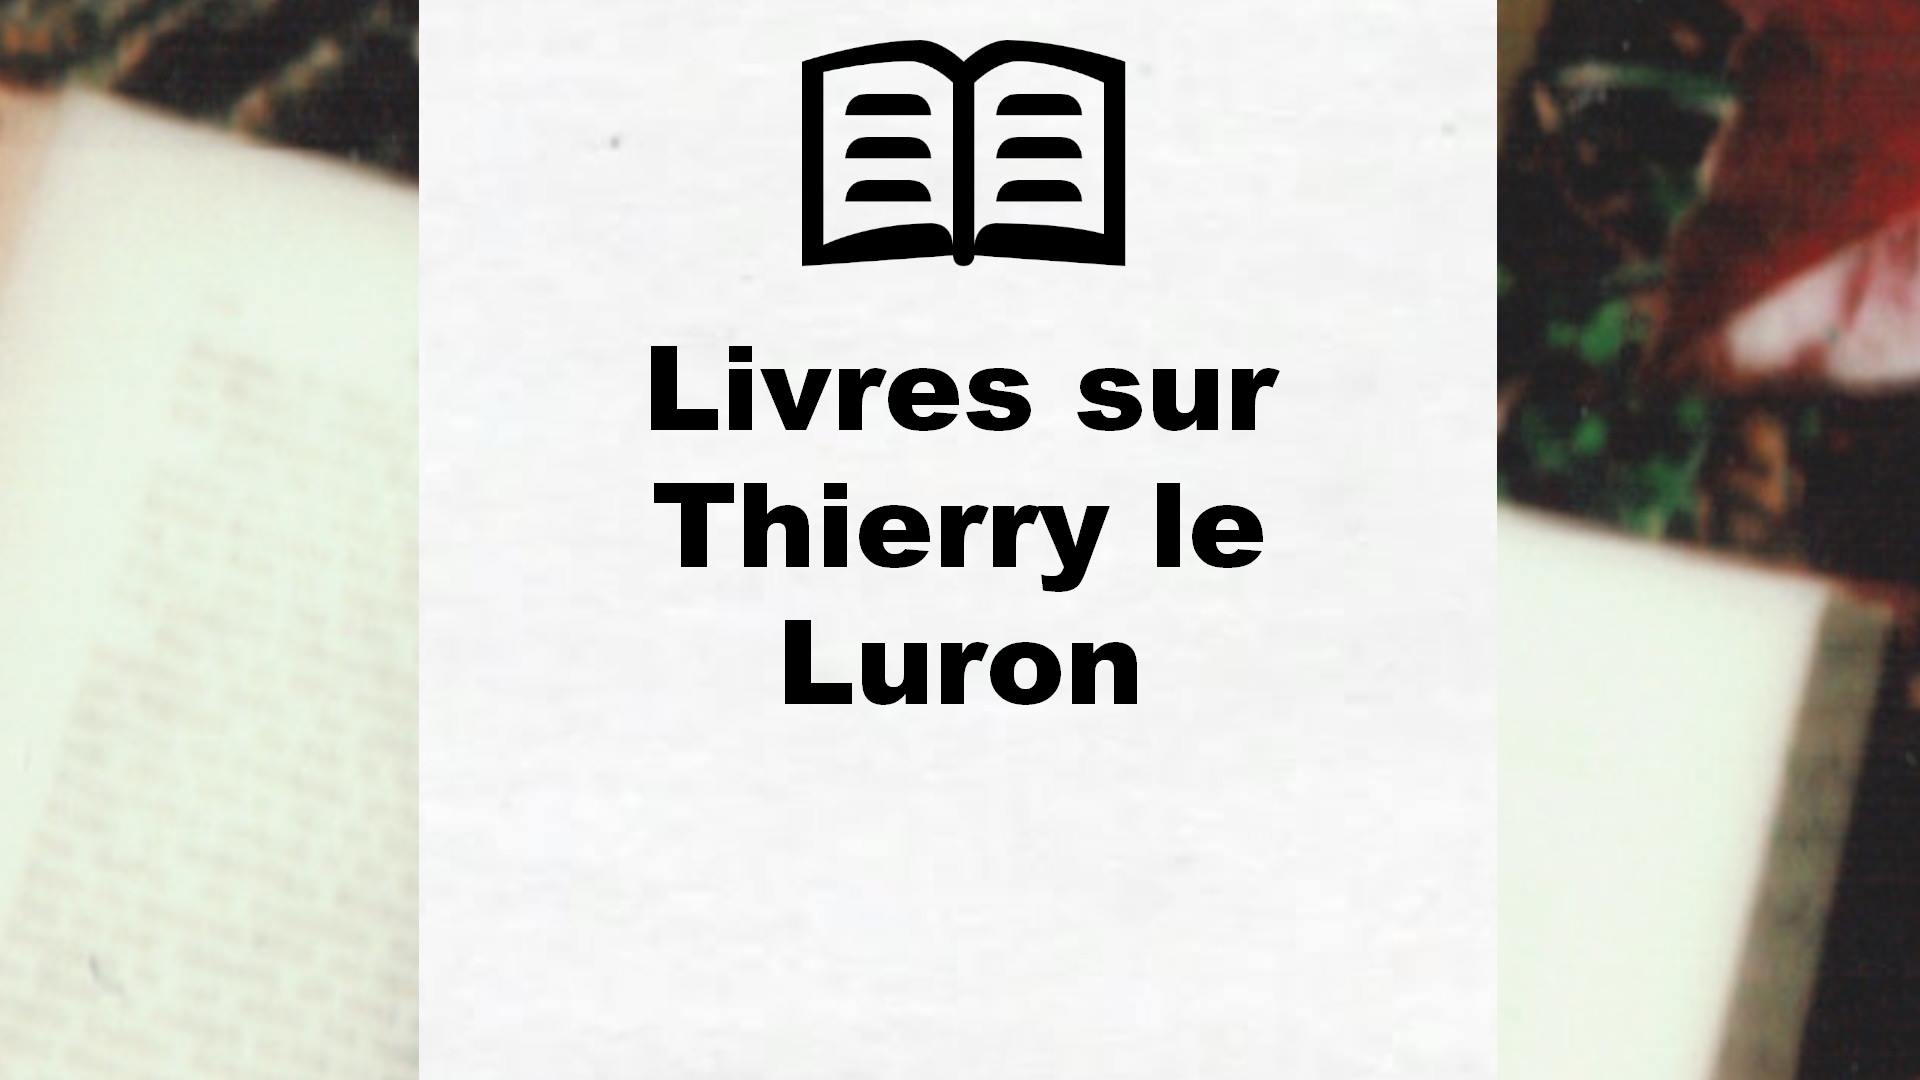 Livres sur Thierry le Luron